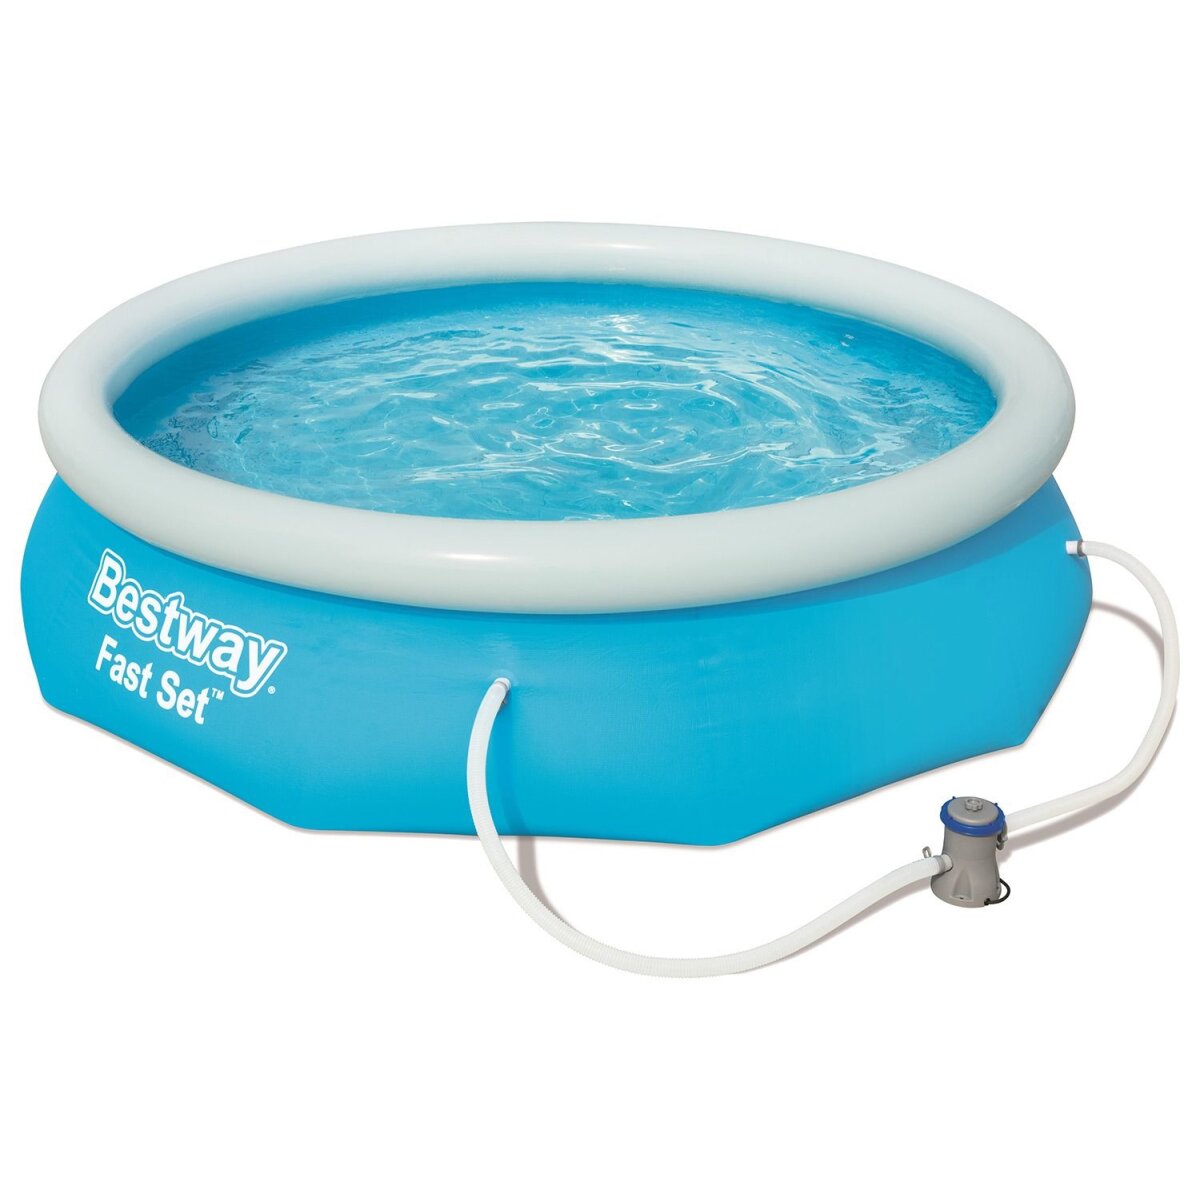 Bestway Fast Set™ Pool, Ø 305 x 76 cm, inkl. Filterpumpe - B-Ware  neuwertig, 37,99 €